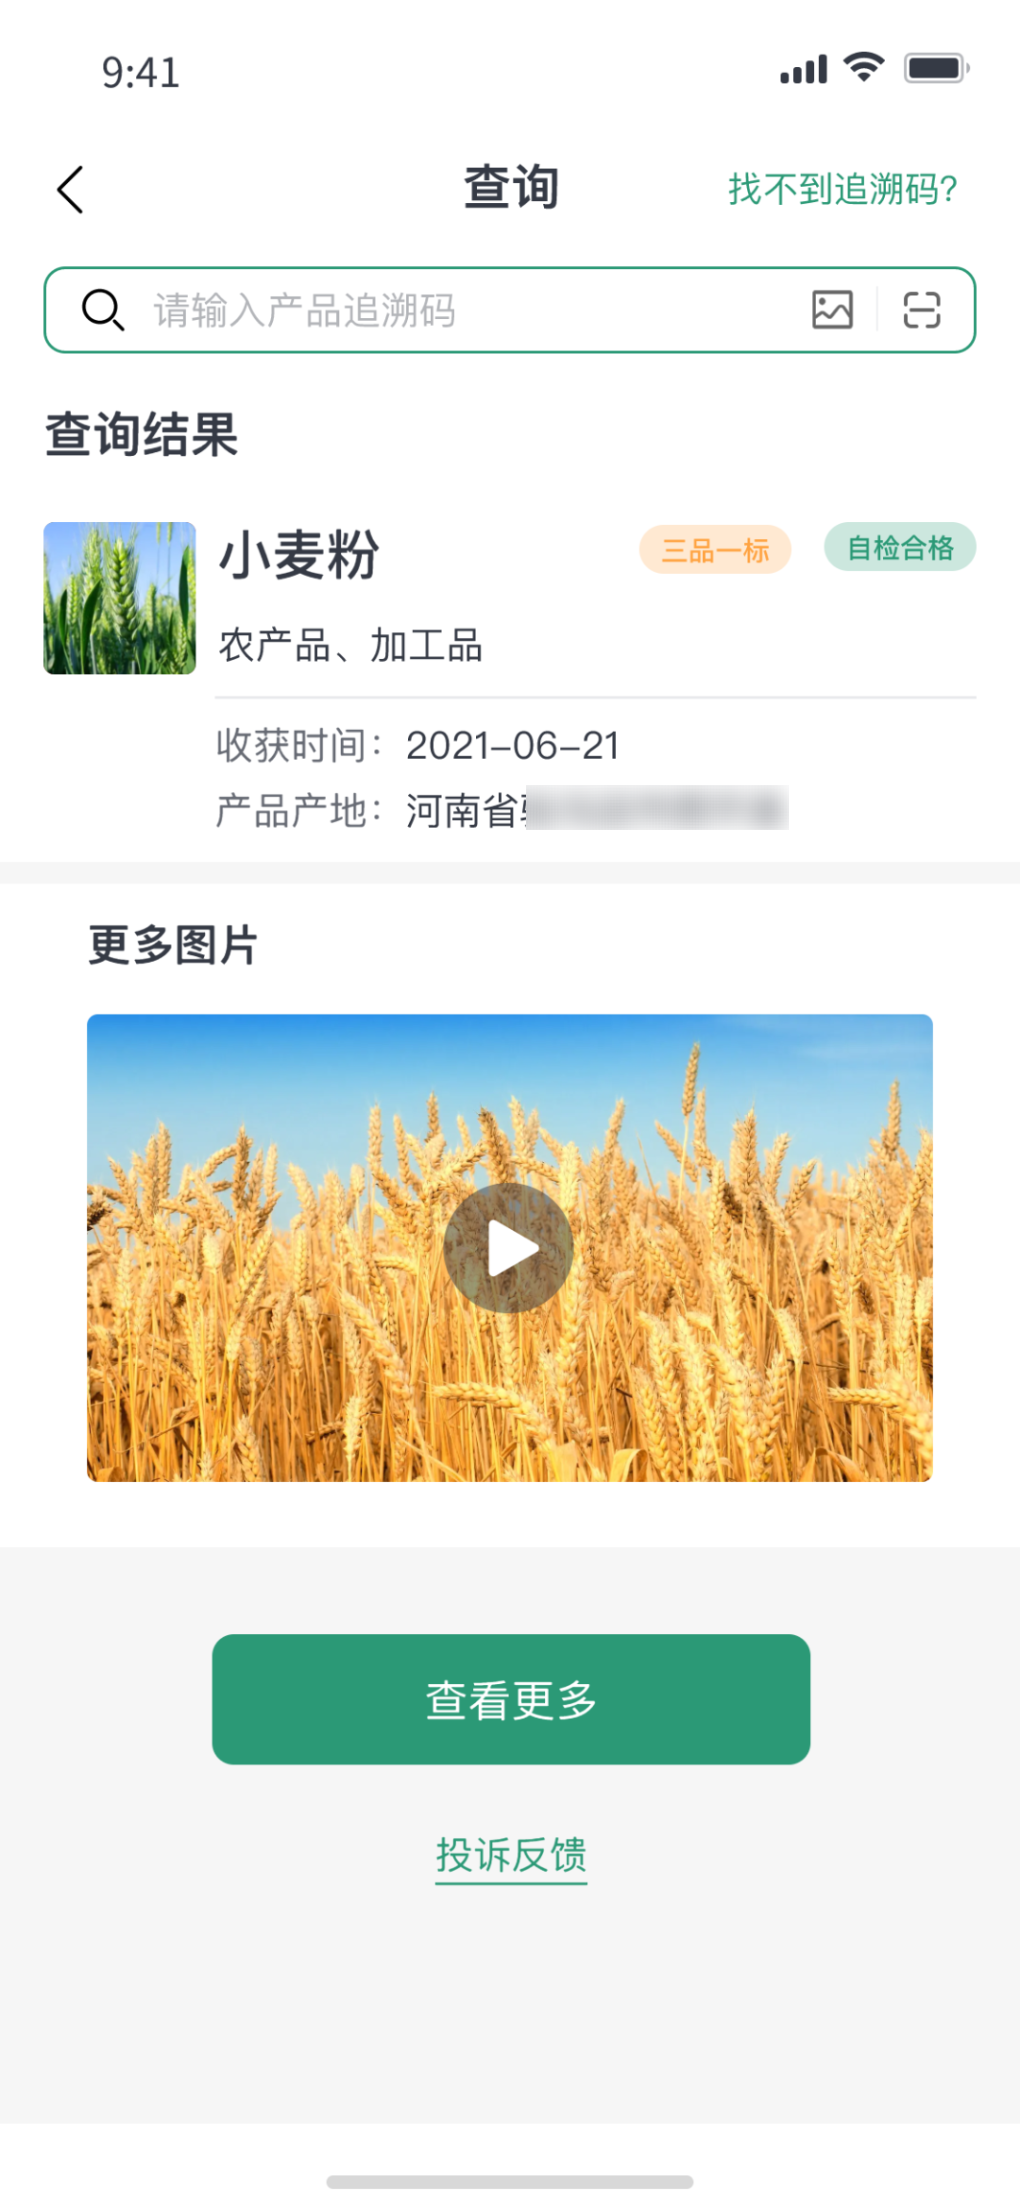 北京市安全监管信息平台_广西农产品质量安全监管与追溯信息平台_水产品监管追溯平台